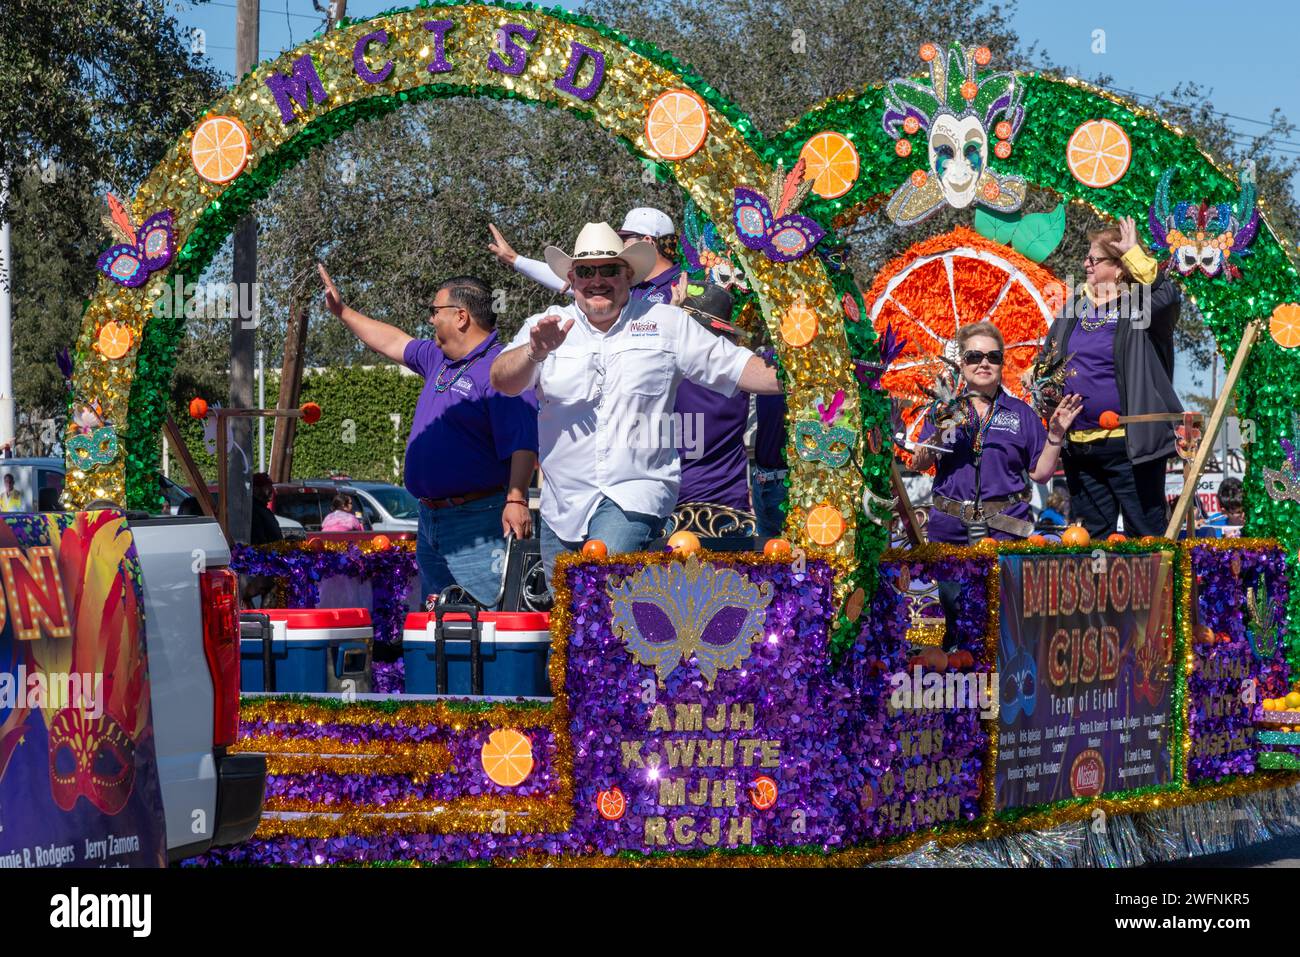 Bei der 92. Jährlichen Texas Citrus Fiesta Parade of Oranges, Mission, Texas, USA, winken die Menschen vom violetten und grünen Paradewagen für den Mission School District. Stockfoto